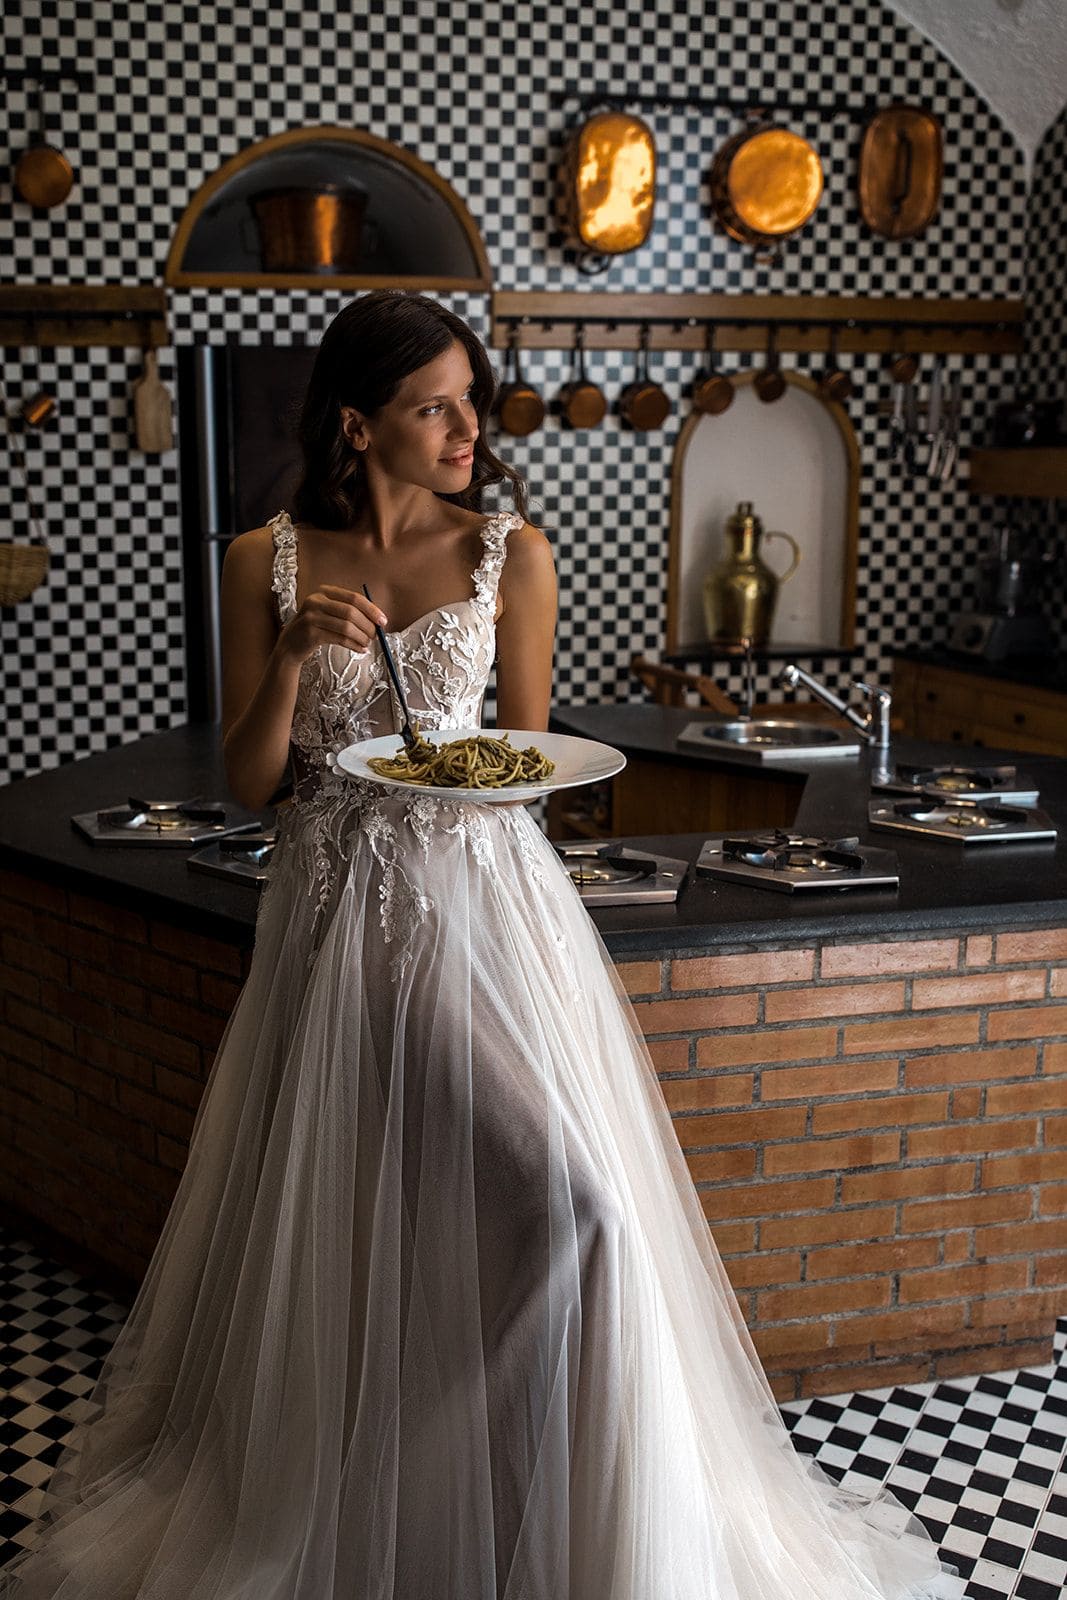 Bride wearing Berta wedding gown in Villa Astor kitchen